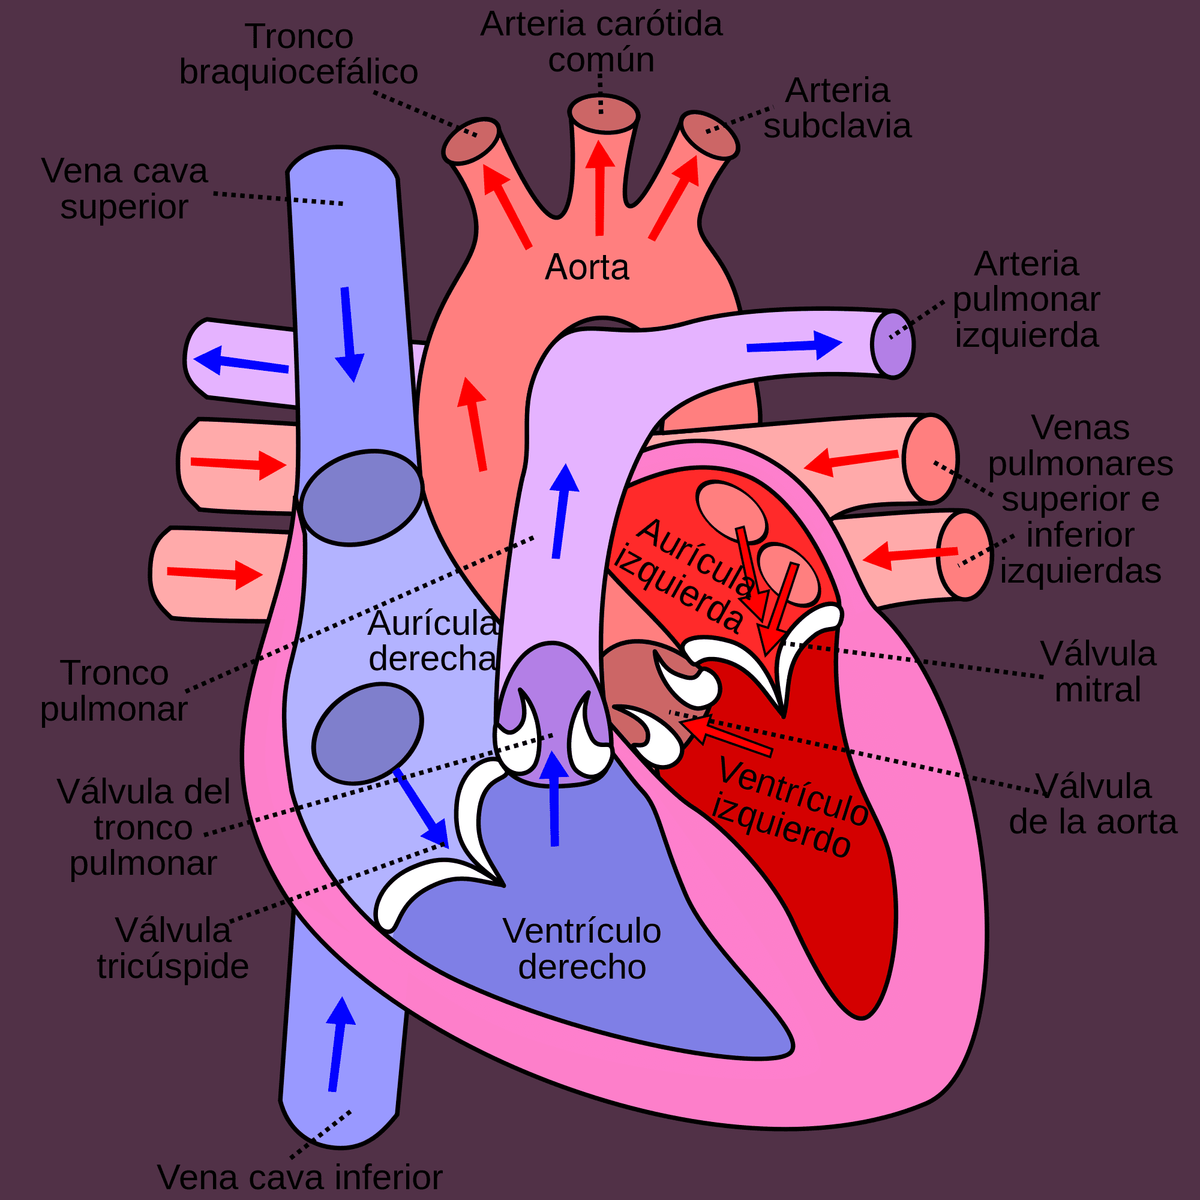 Pohyby srdeční systoly a diastoly